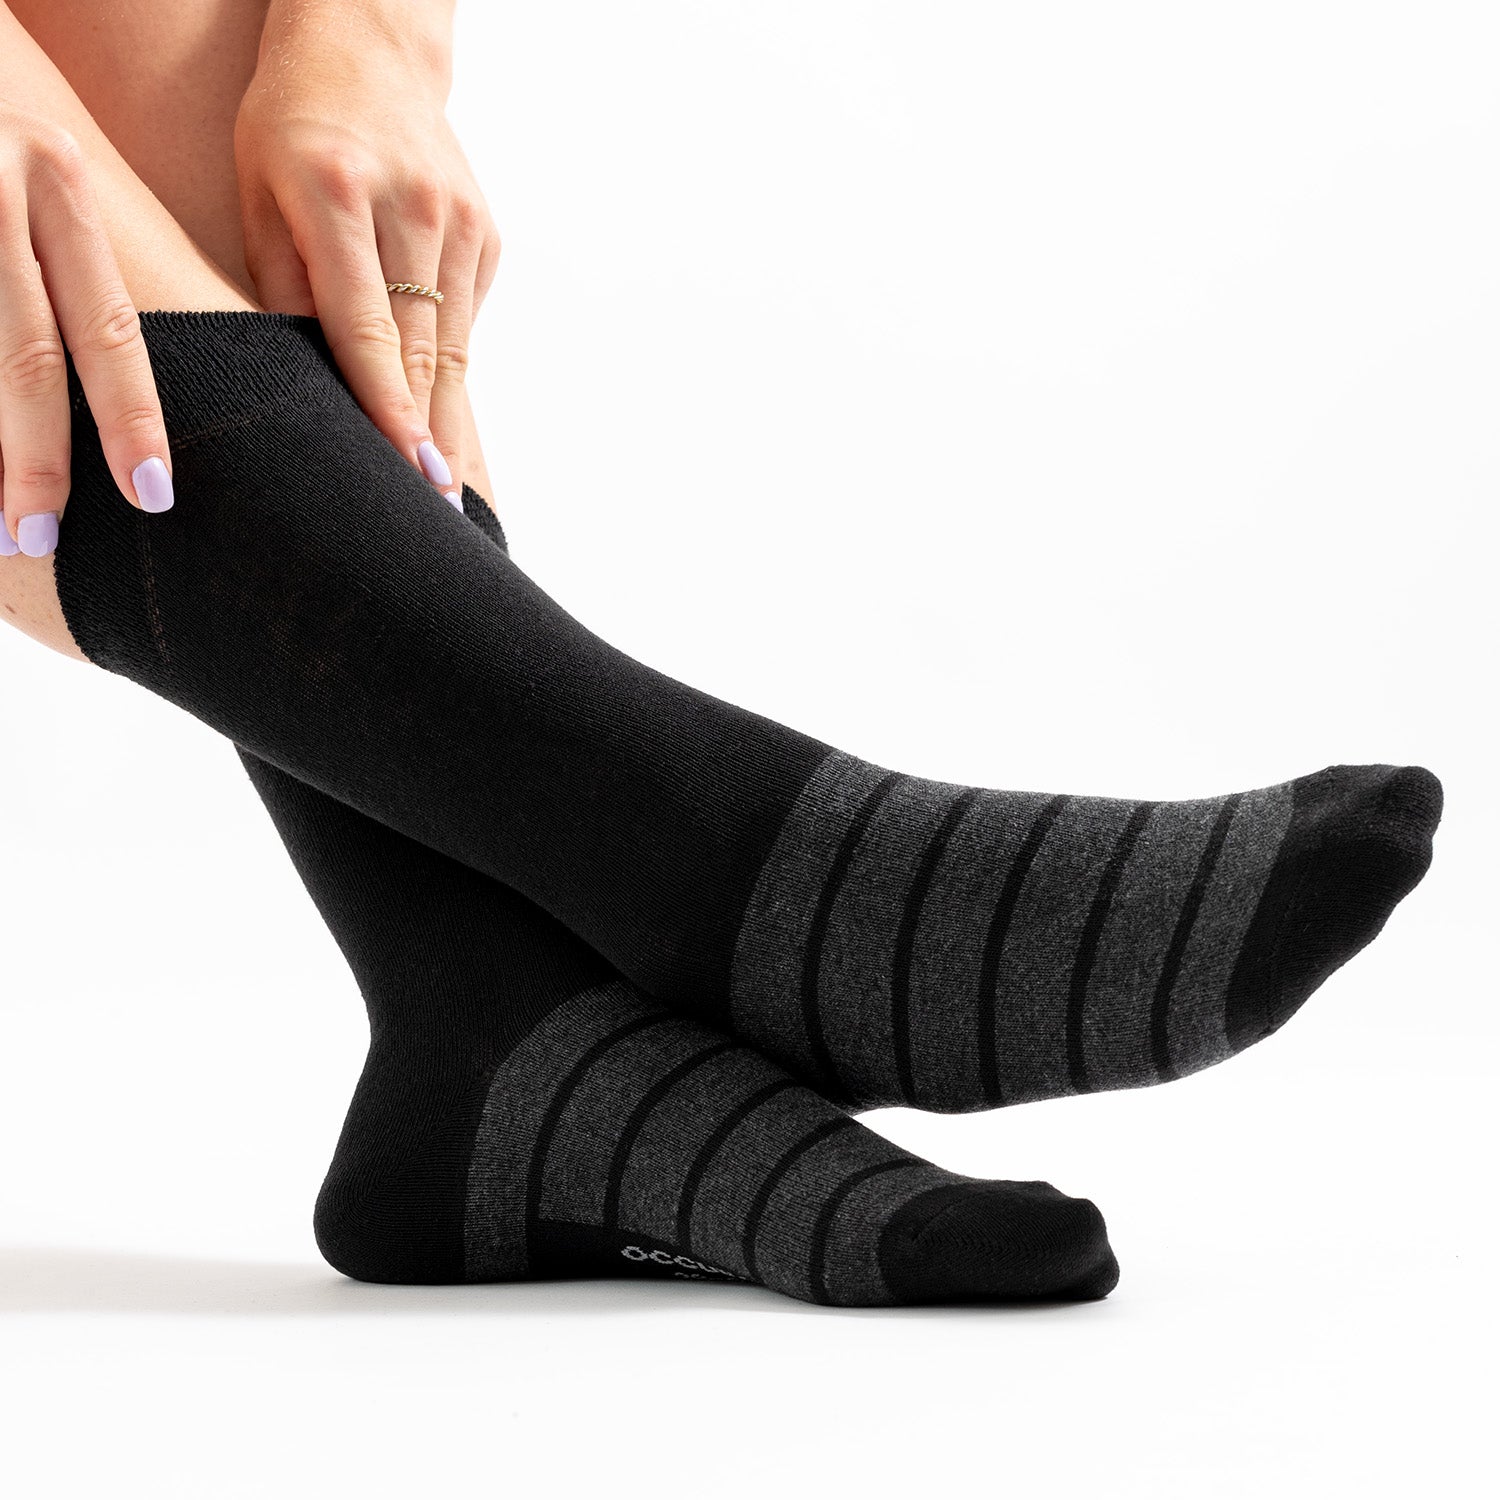 Damen Farbige Socken 10er Pack (Modell: Laura)